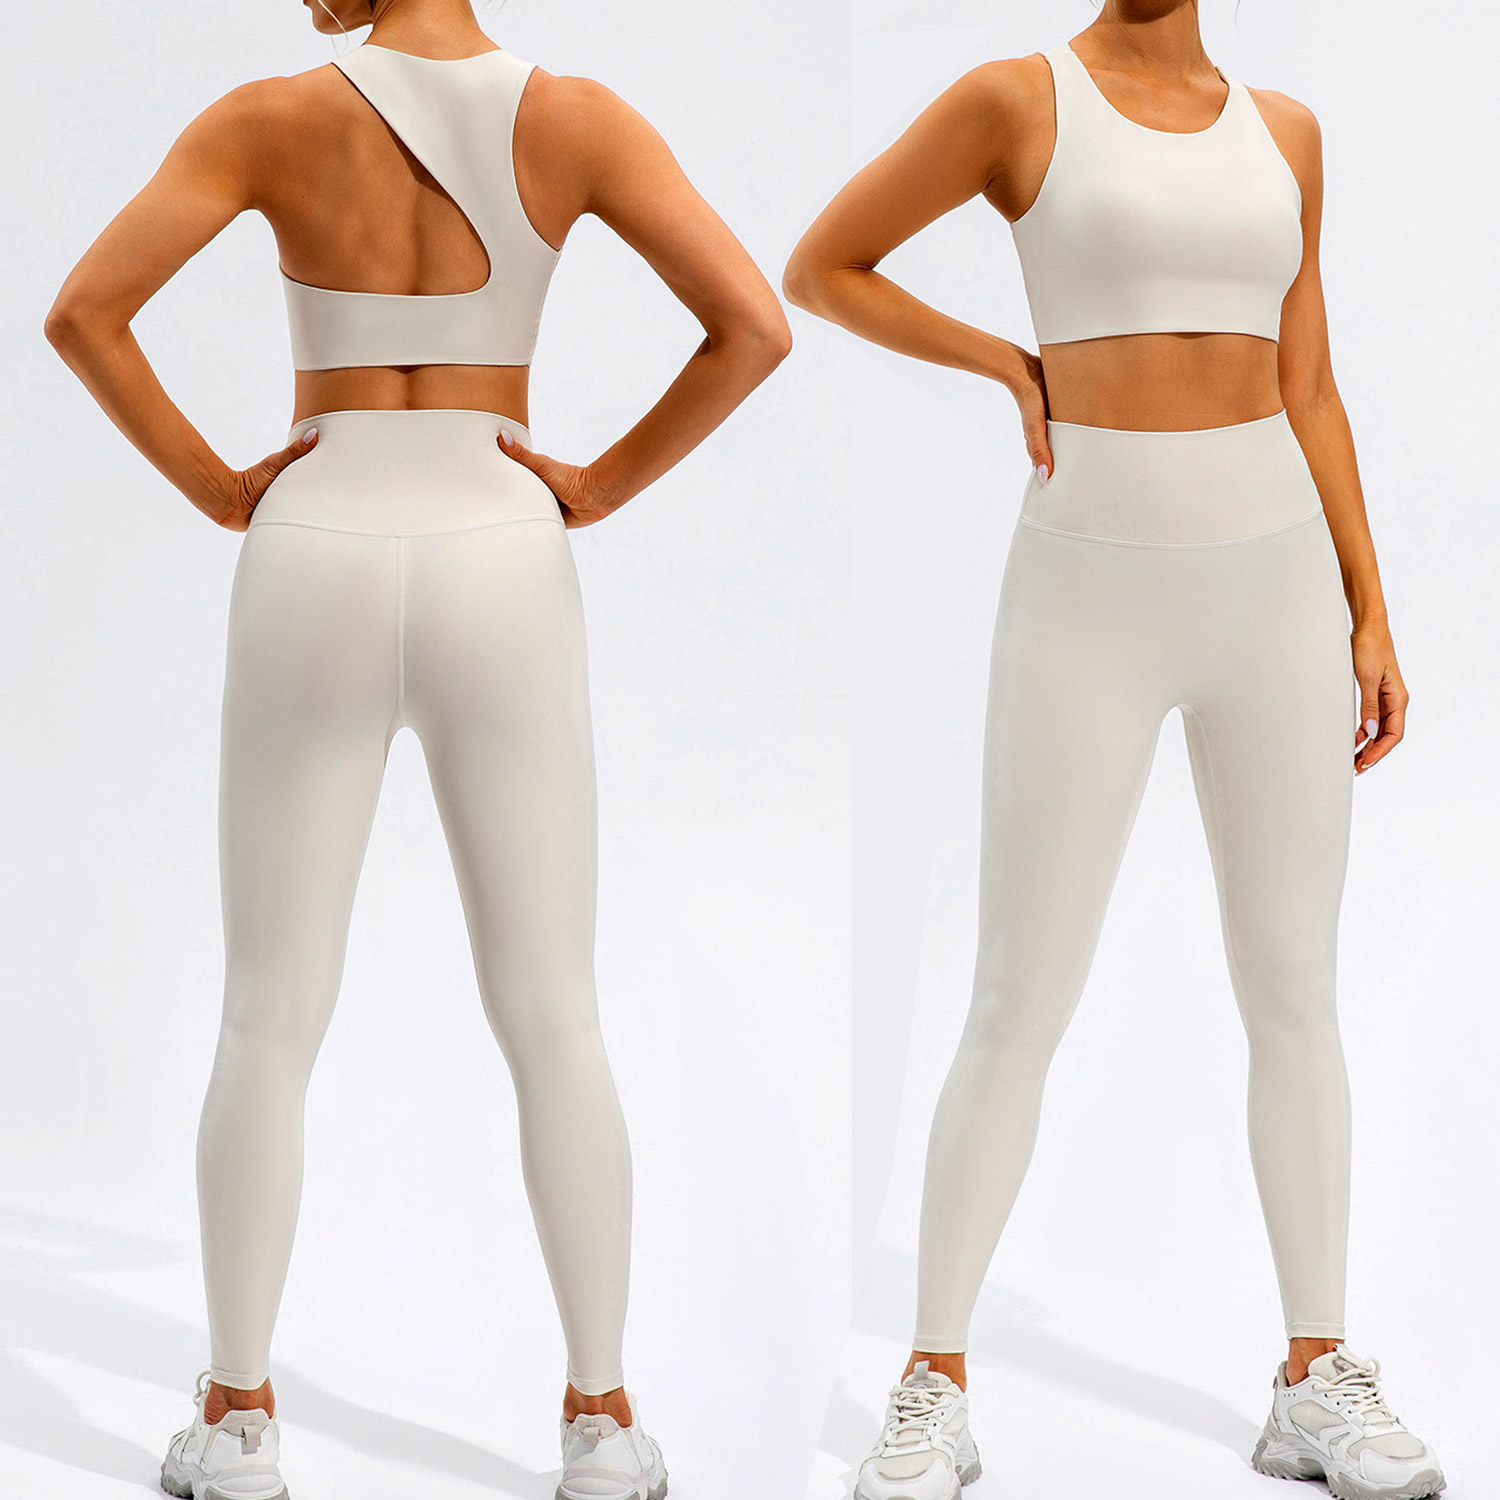 Vente chaude femme pantalons de Yoga personnalisés Push Up Sportswear Fitness Leggings d'entraînement serrés